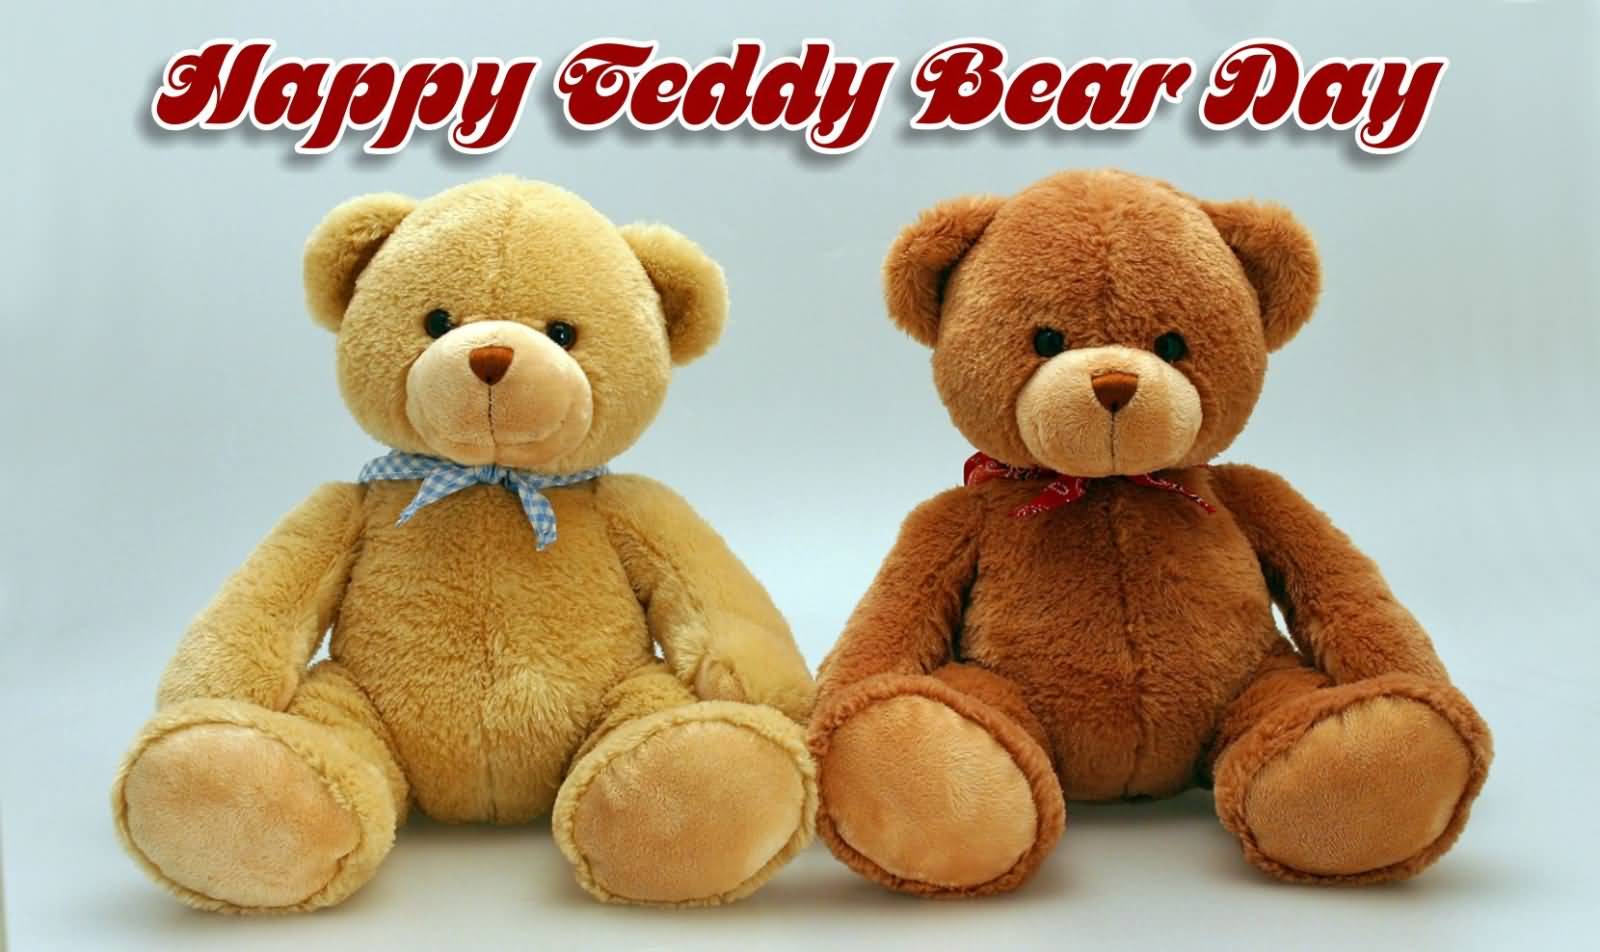 Happy Teddy Bear Day 2017 Two Teddy Bears